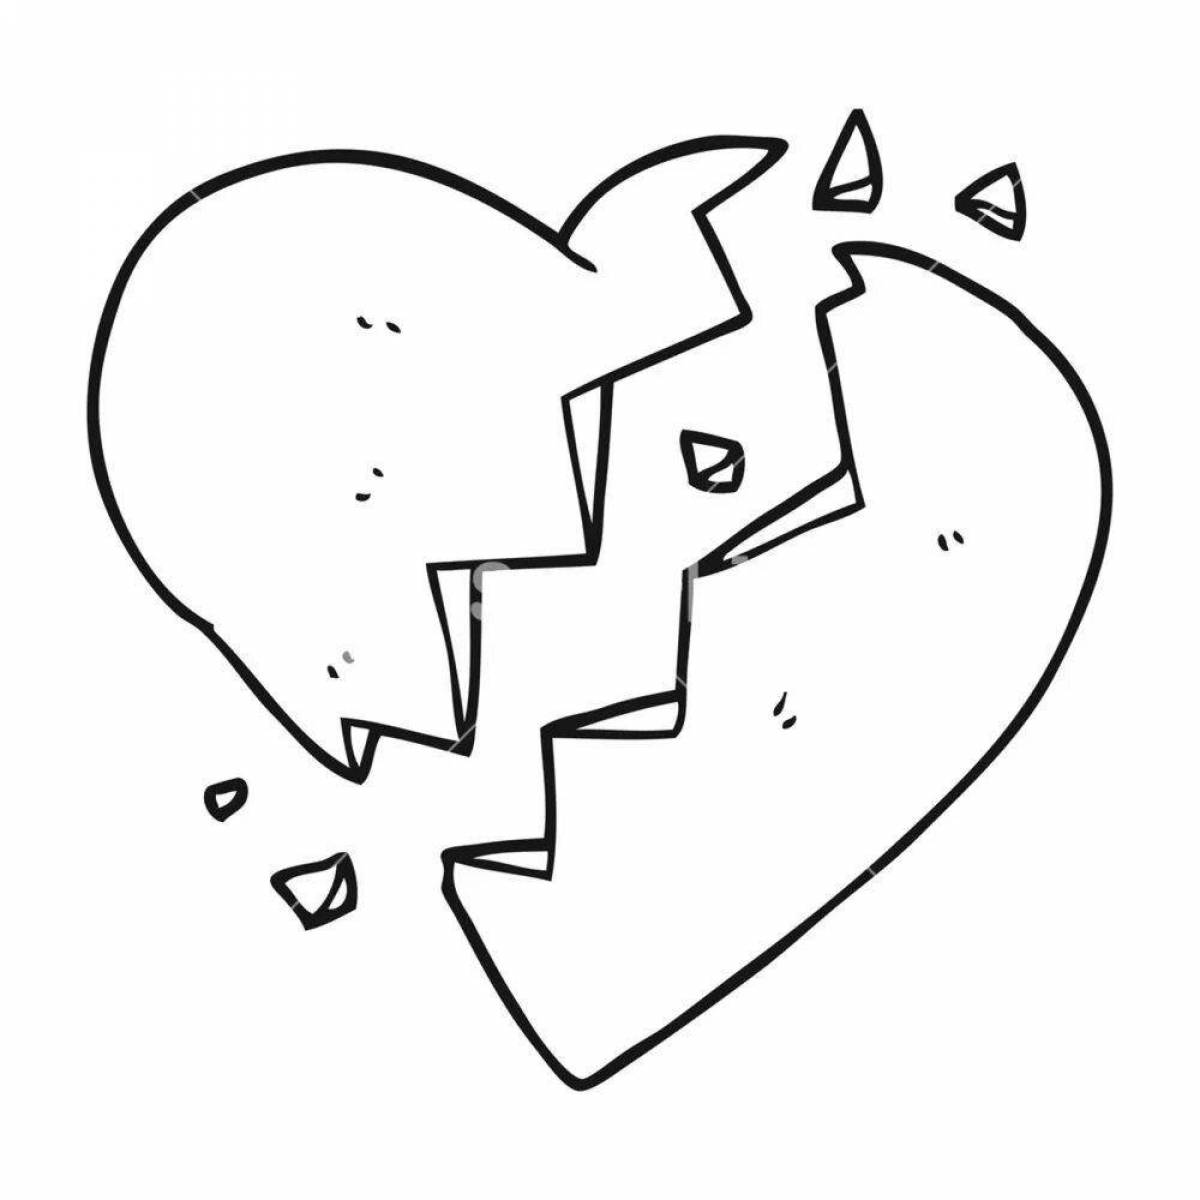 Bright broken heart coloring page